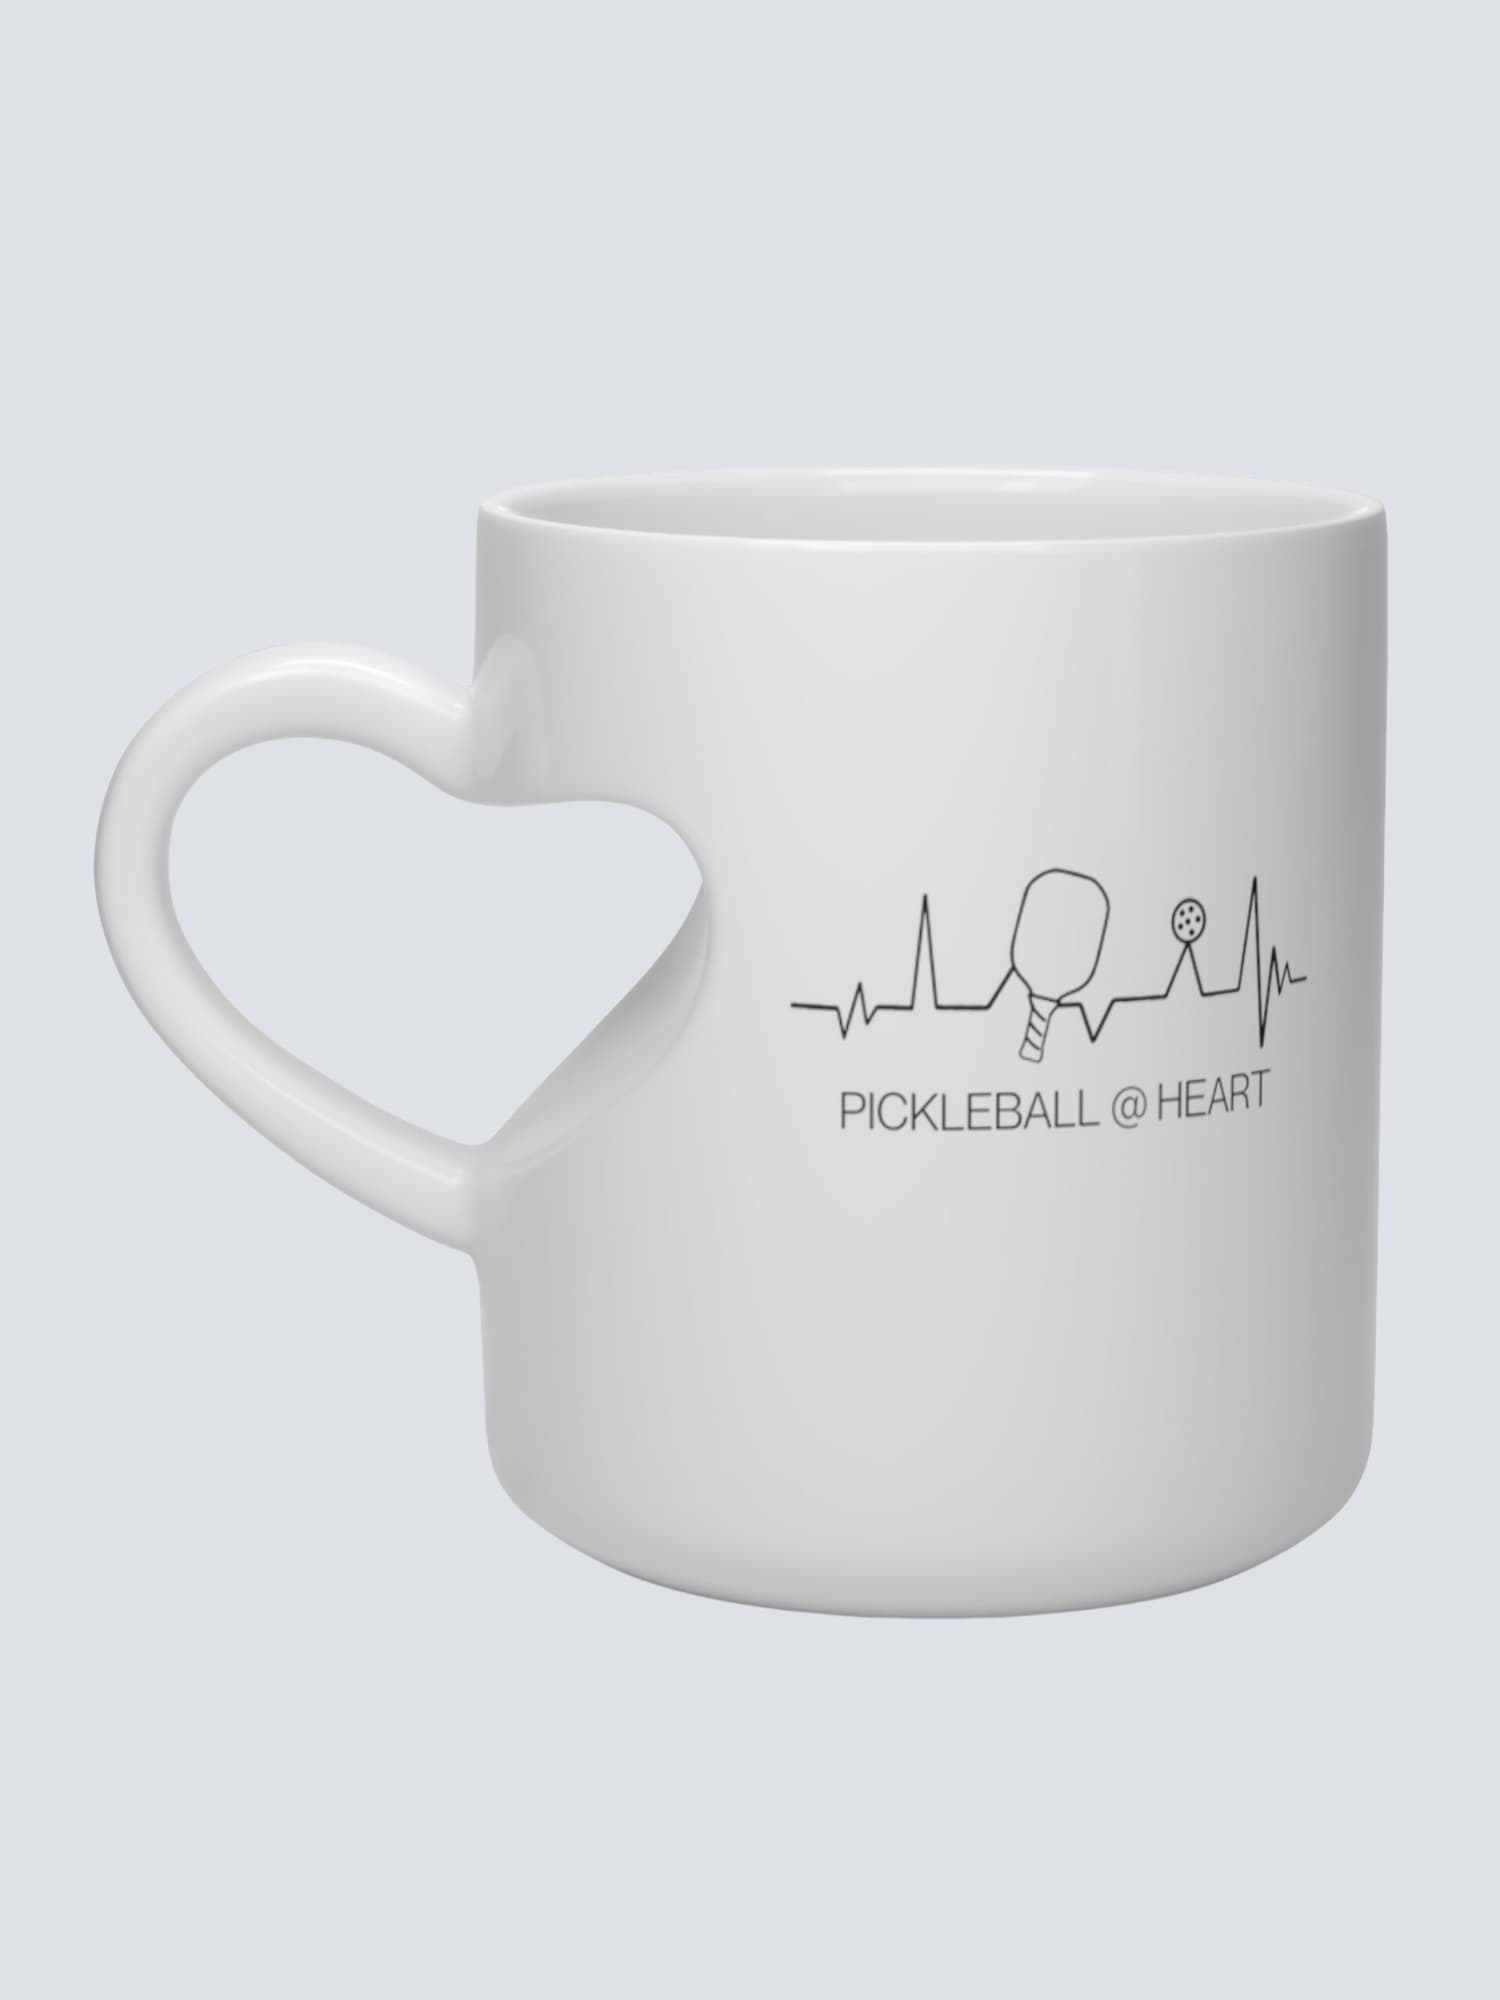 Heart Shape Pickleball Mug - Pickleball @ Heart